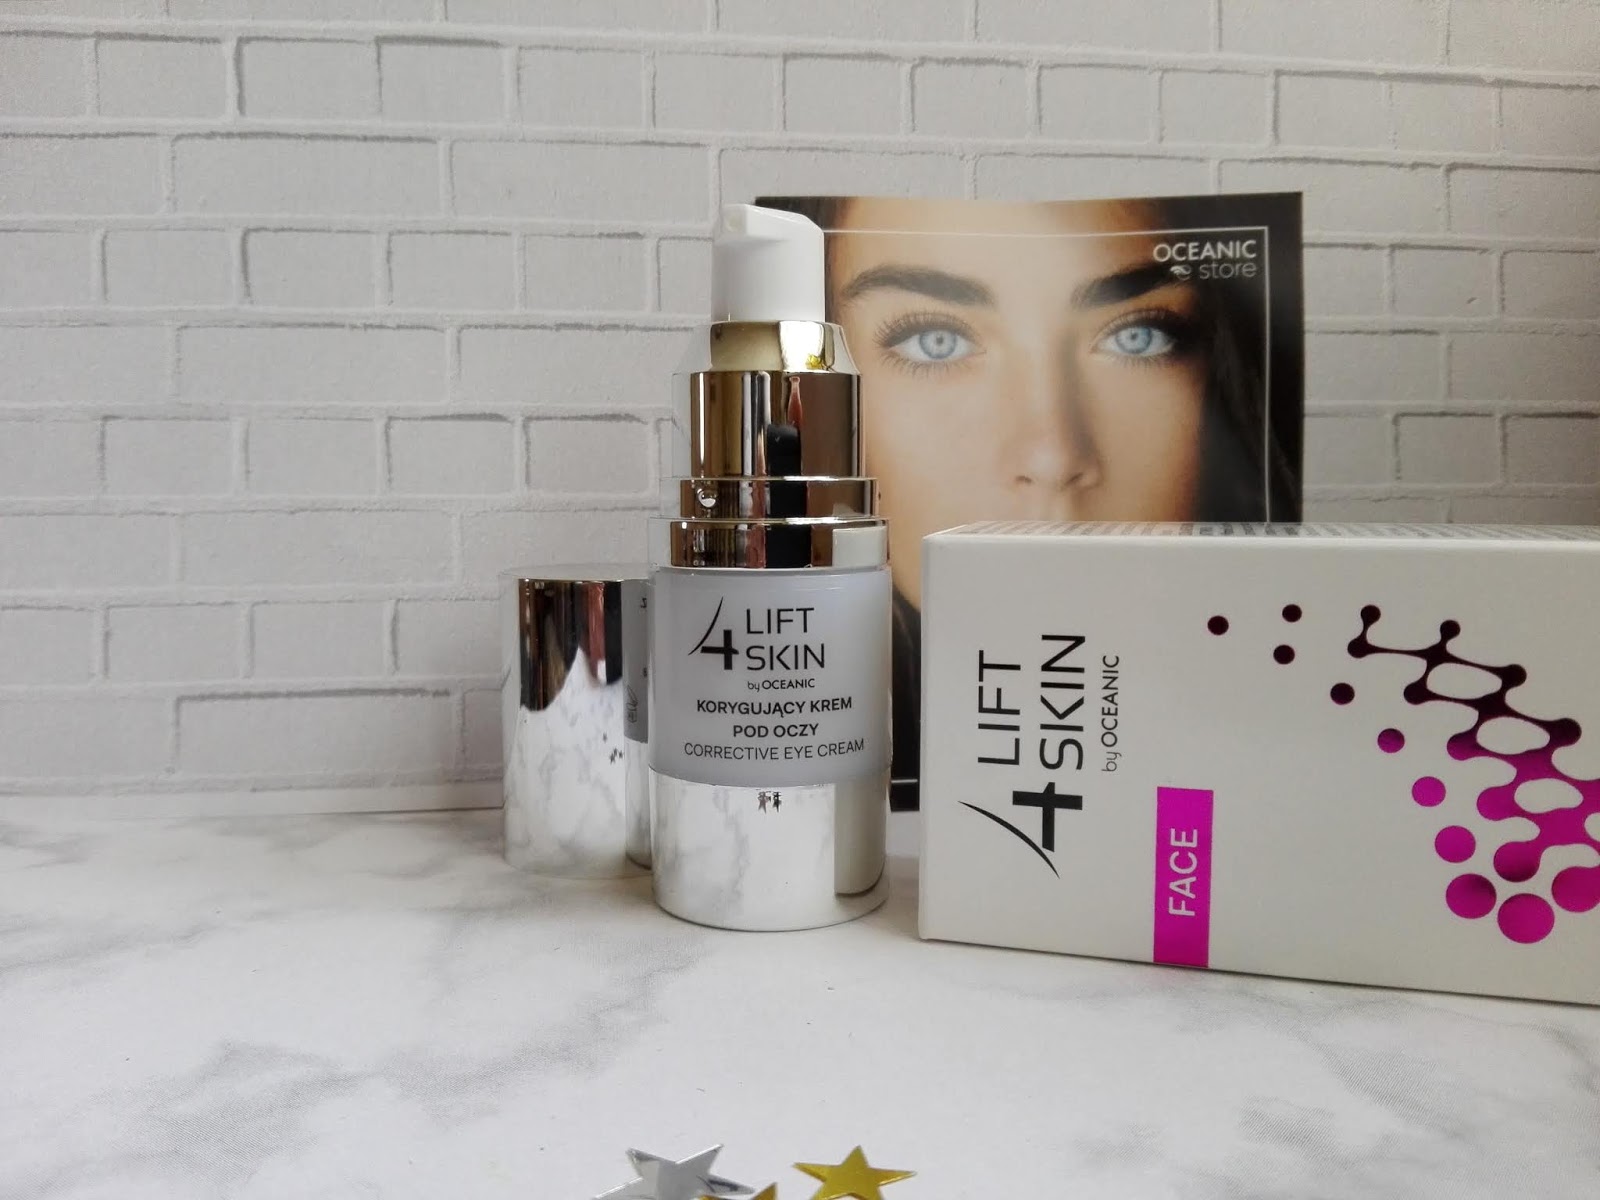 Cosmetics reviews : Lift4Skin Active Glycol korygujący krem pod oczy - skuteczny czy nie?